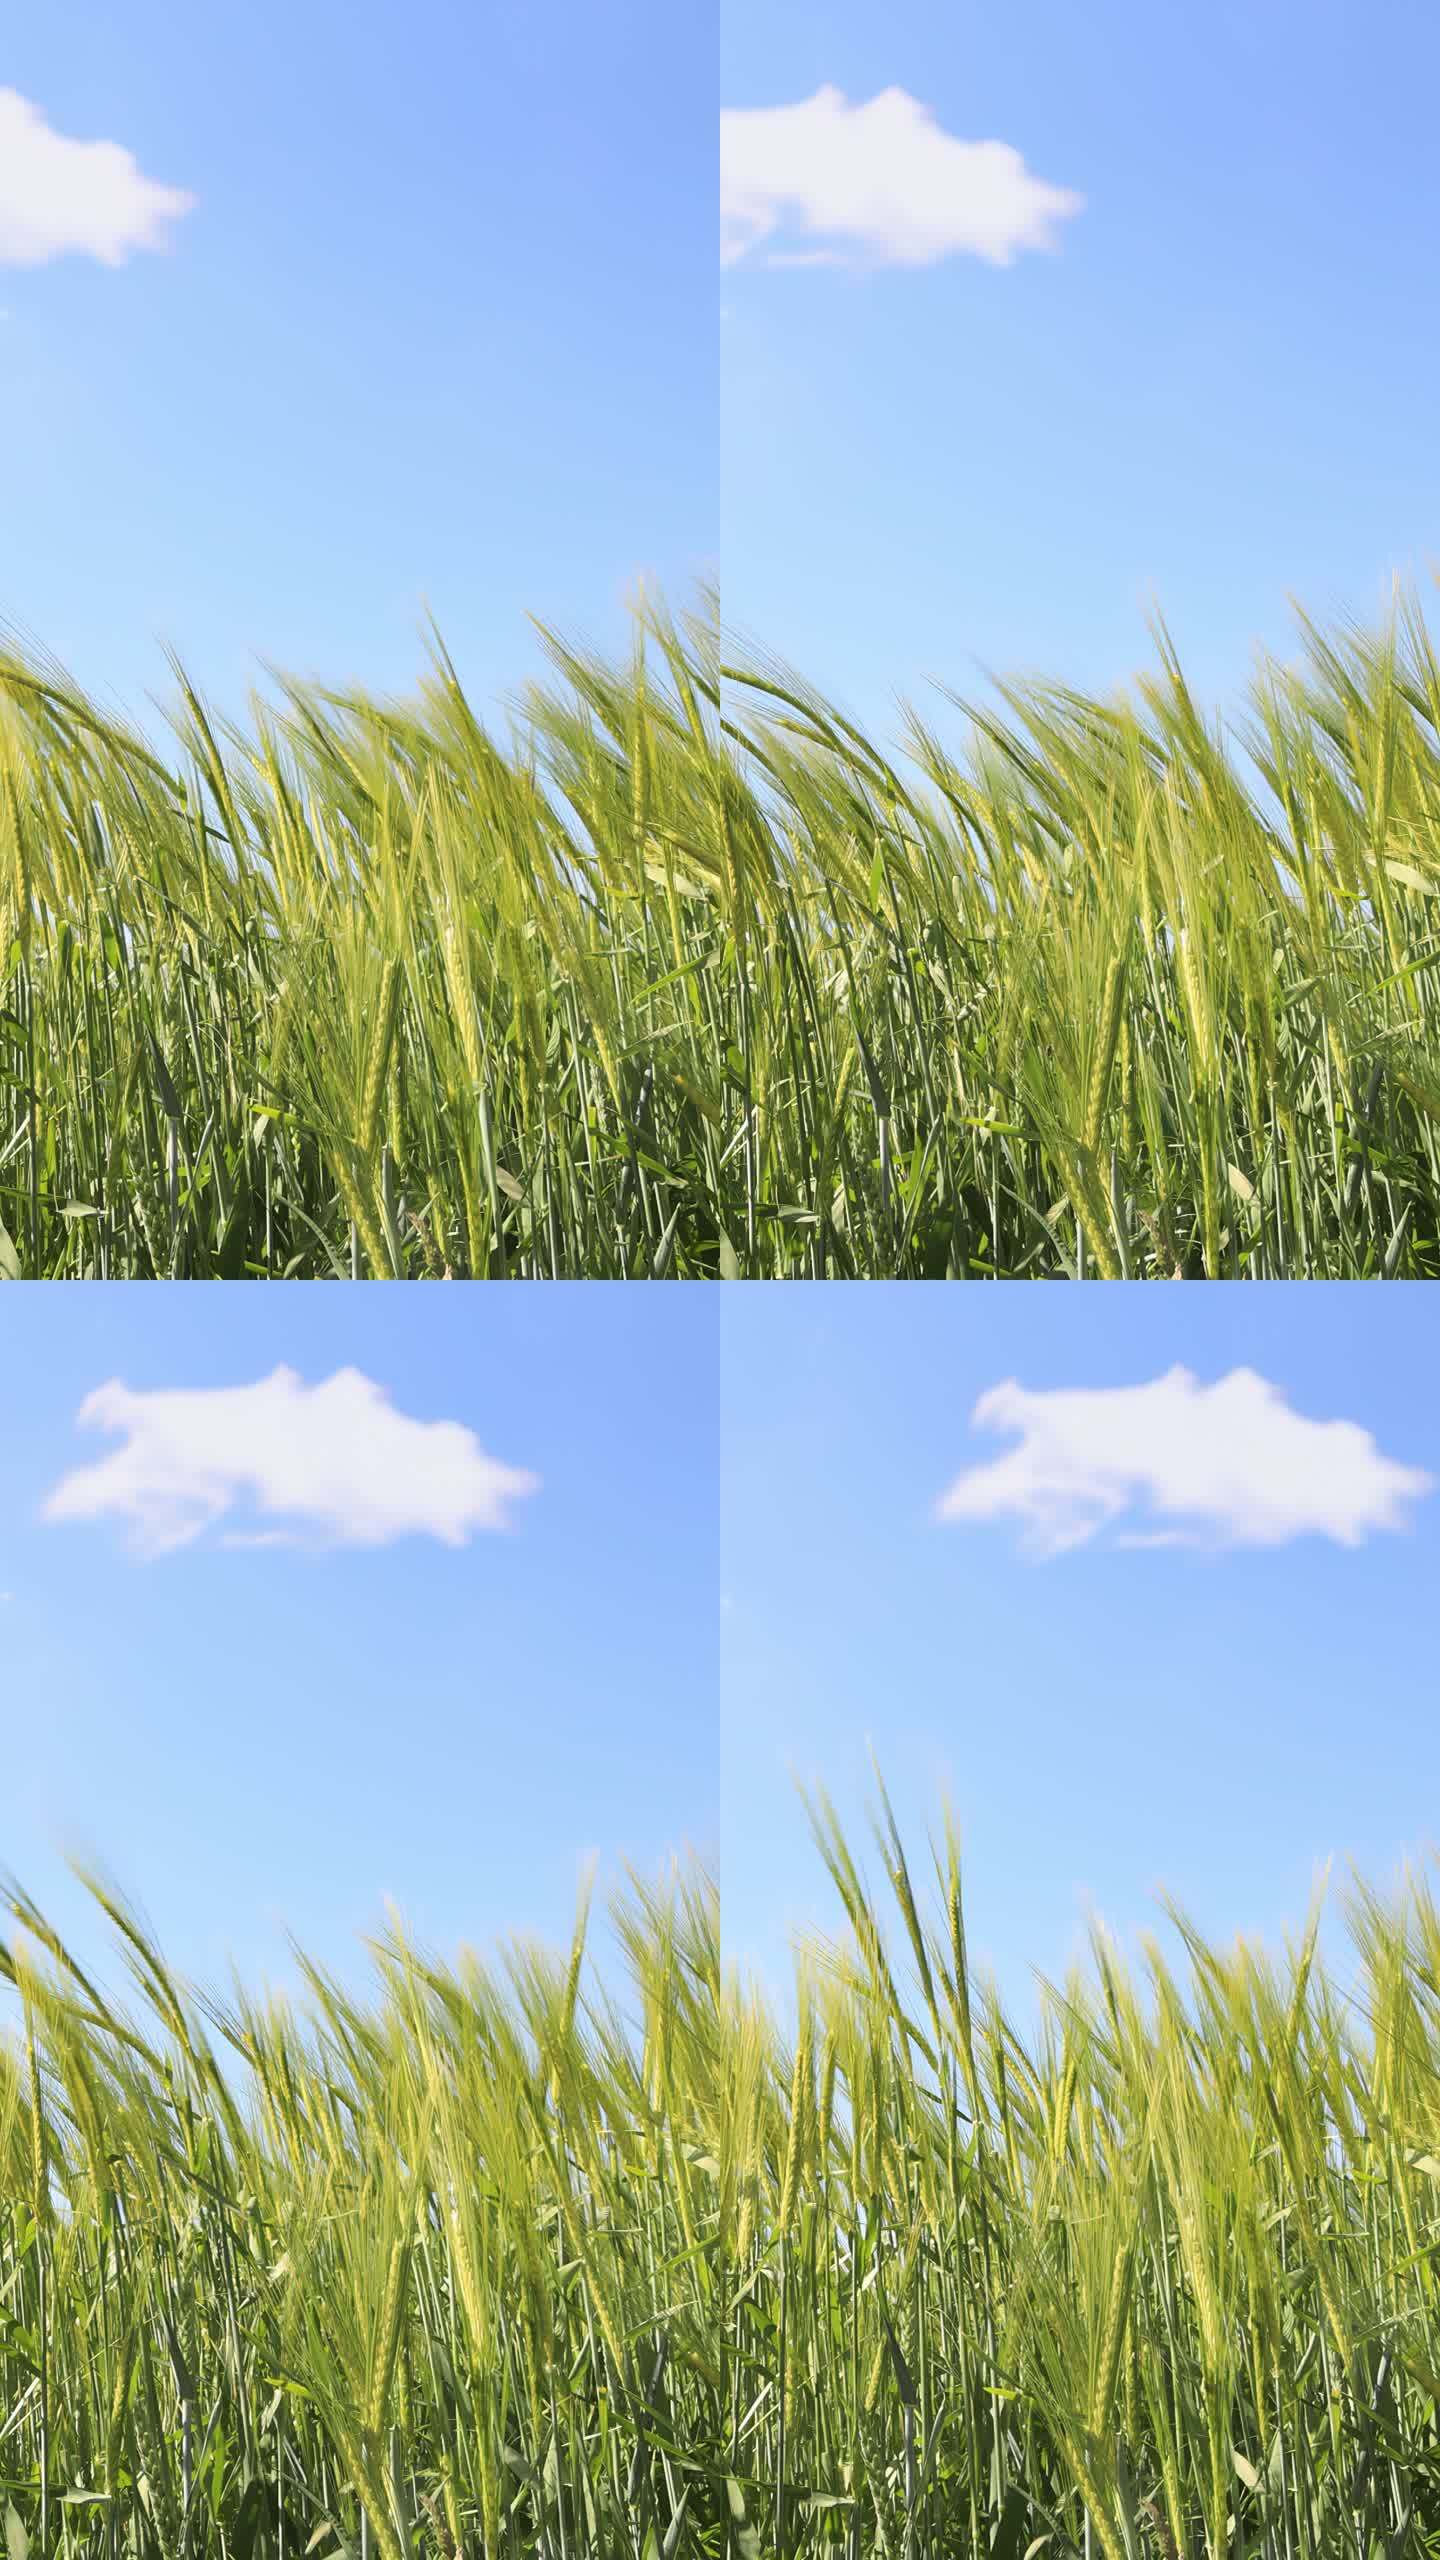 小麦在风中摇曳，天空湛蓝，一朵快速移动的云从左向右移动。